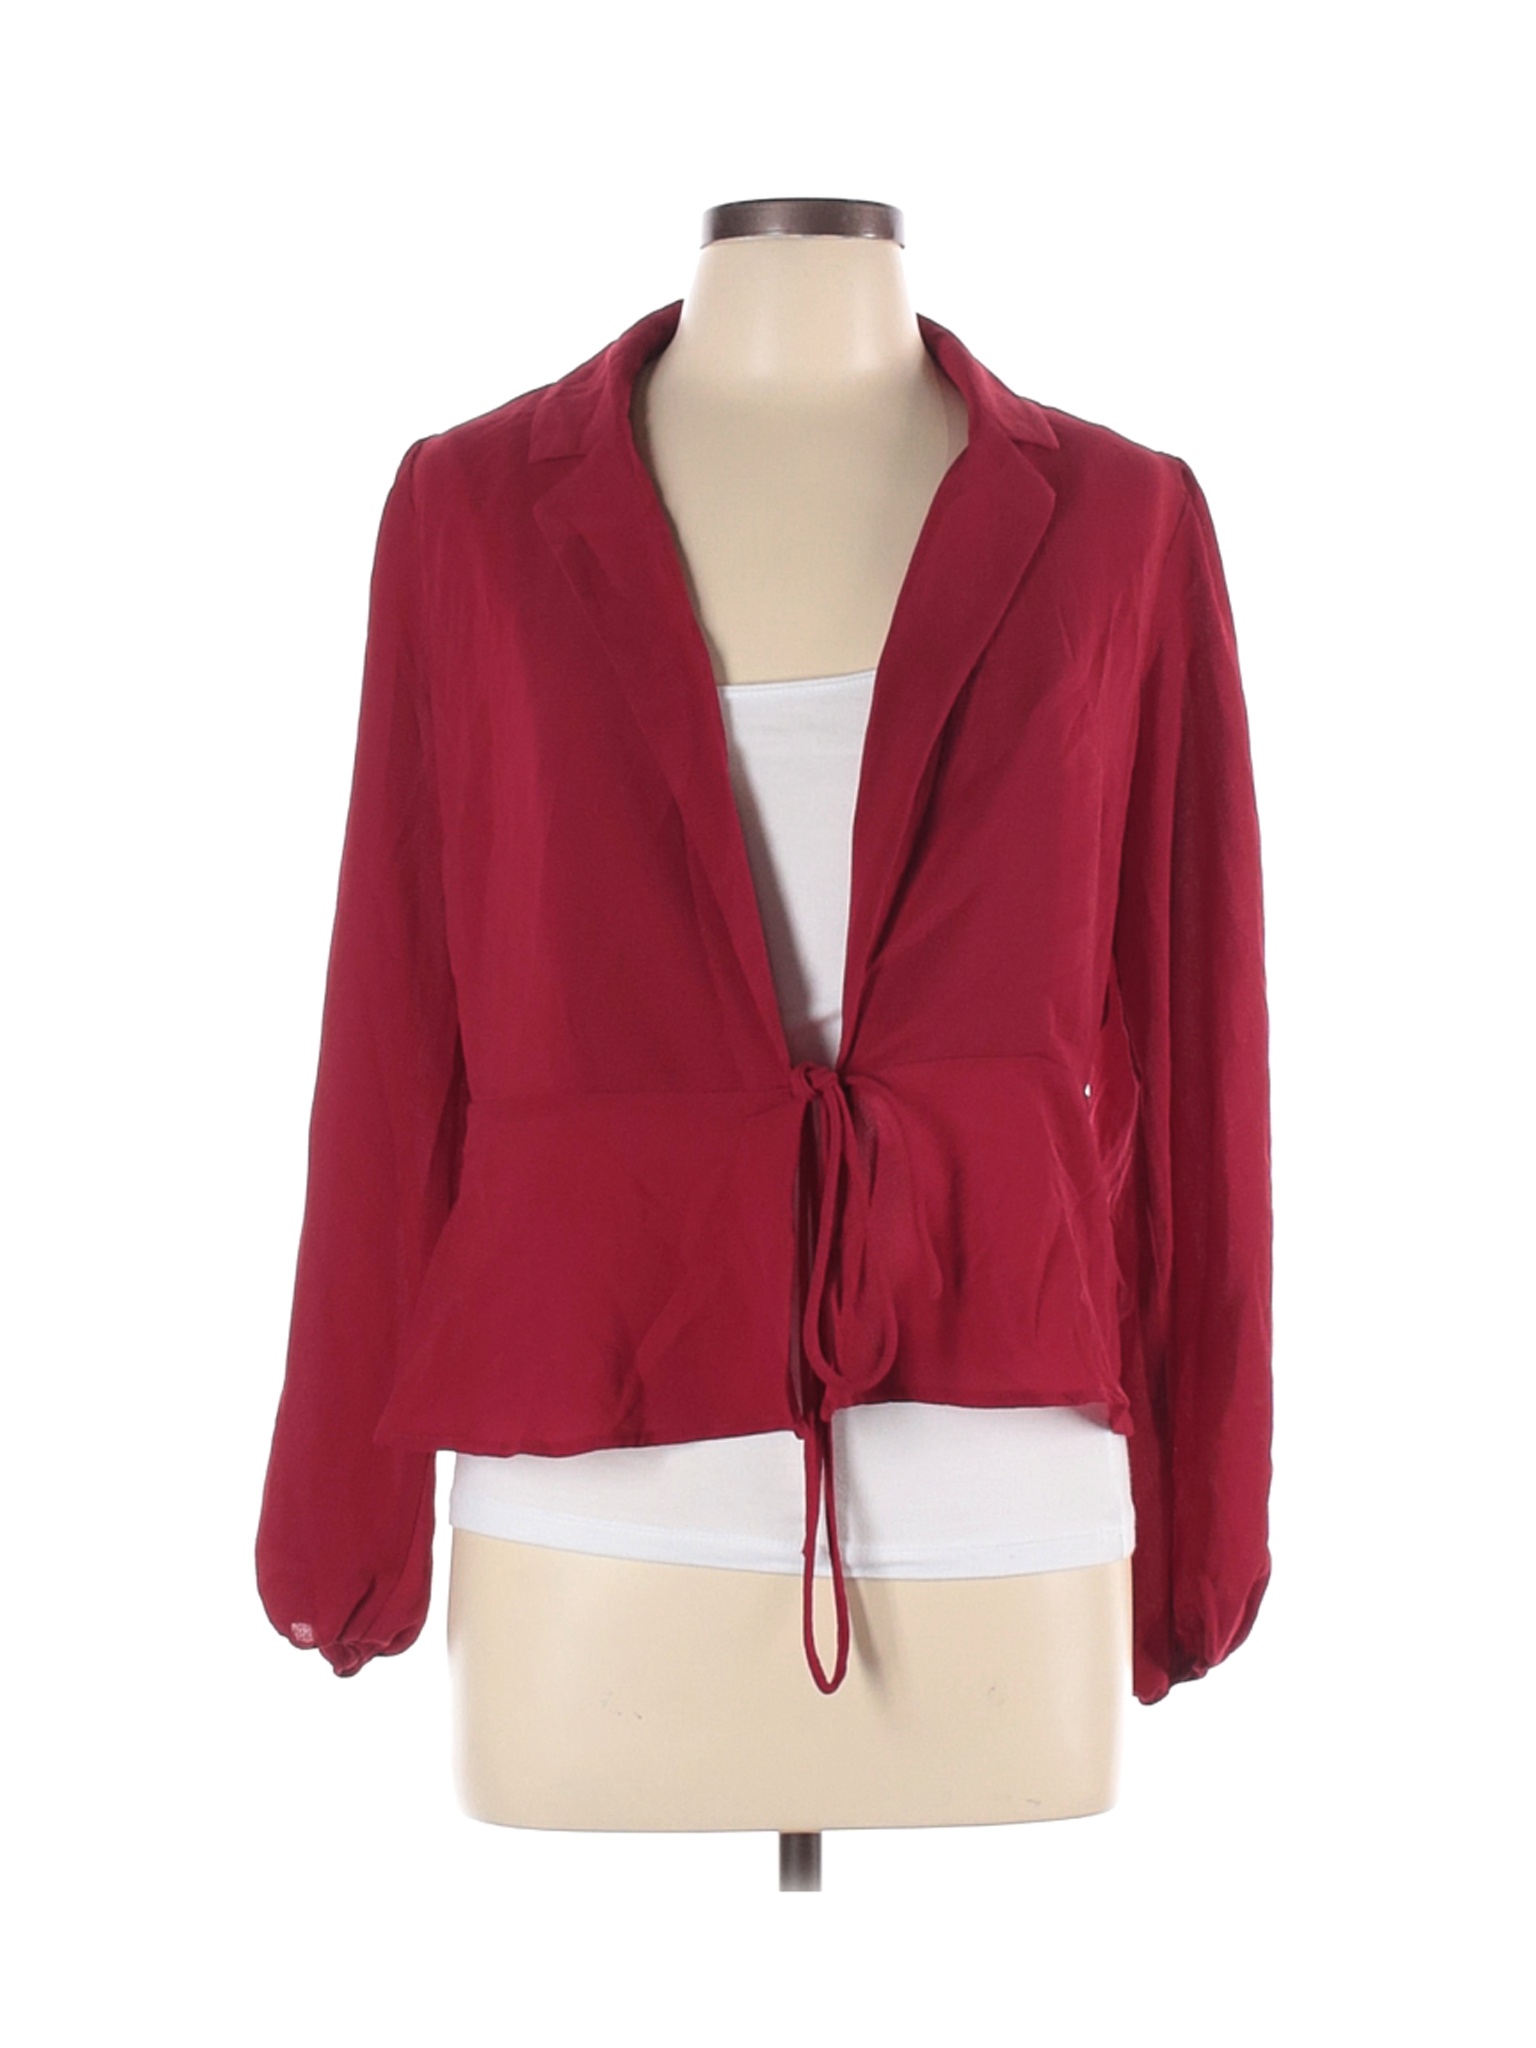 NWT Forever 21 Women Red Long Sleeve Blouse S | eBay